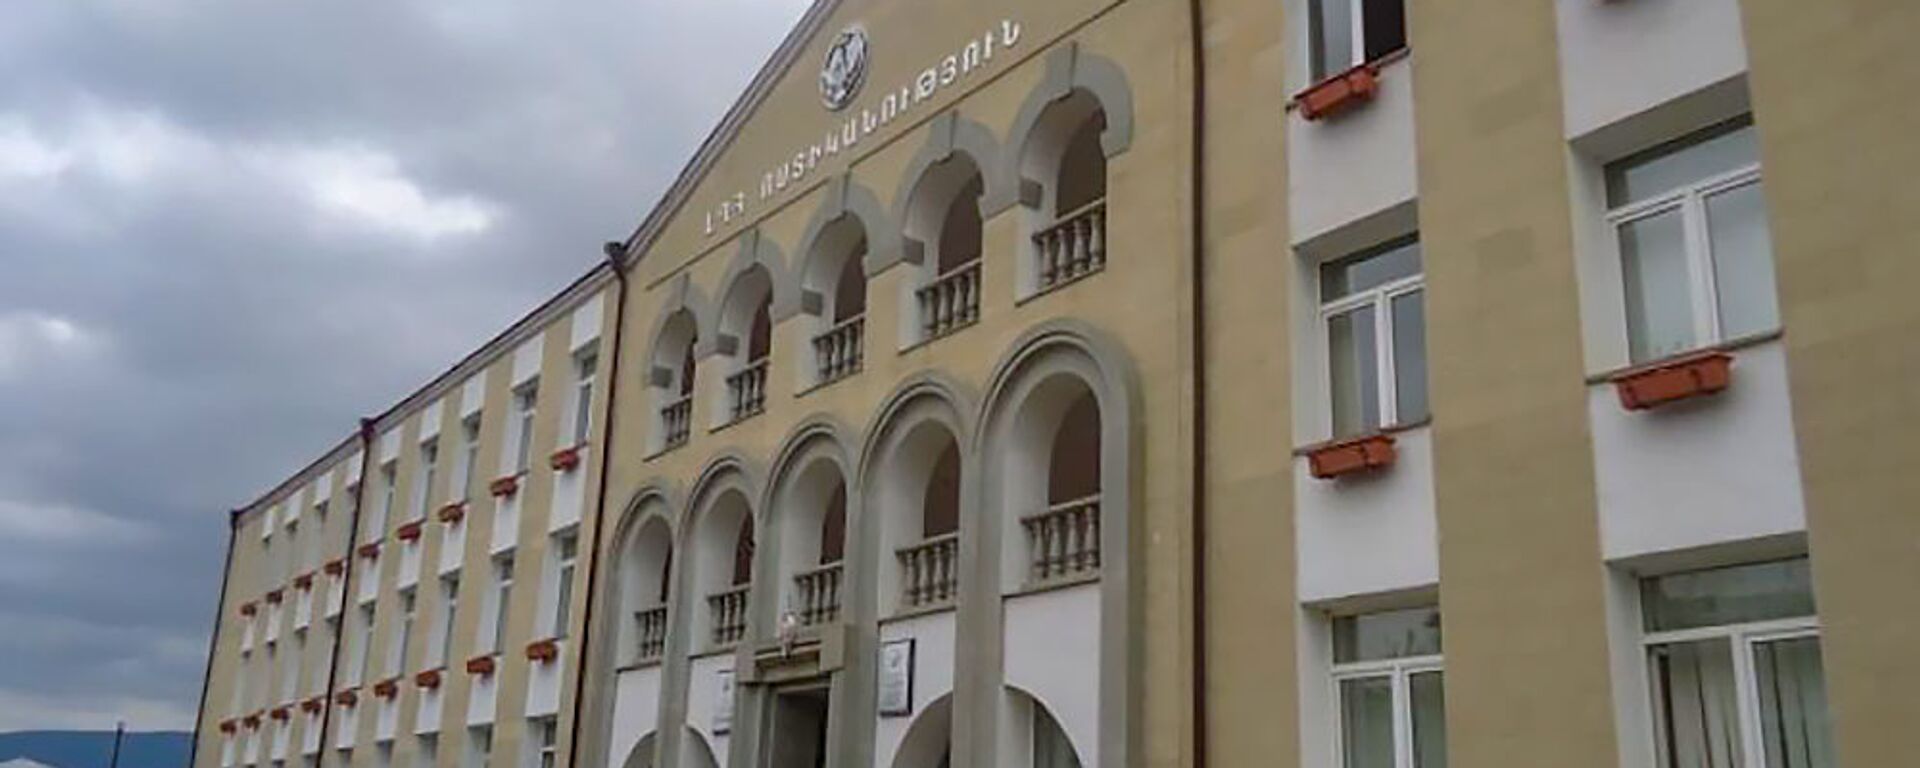 Здание полиции Карабаха - Sputnik Армения, 1920, 17.02.2021